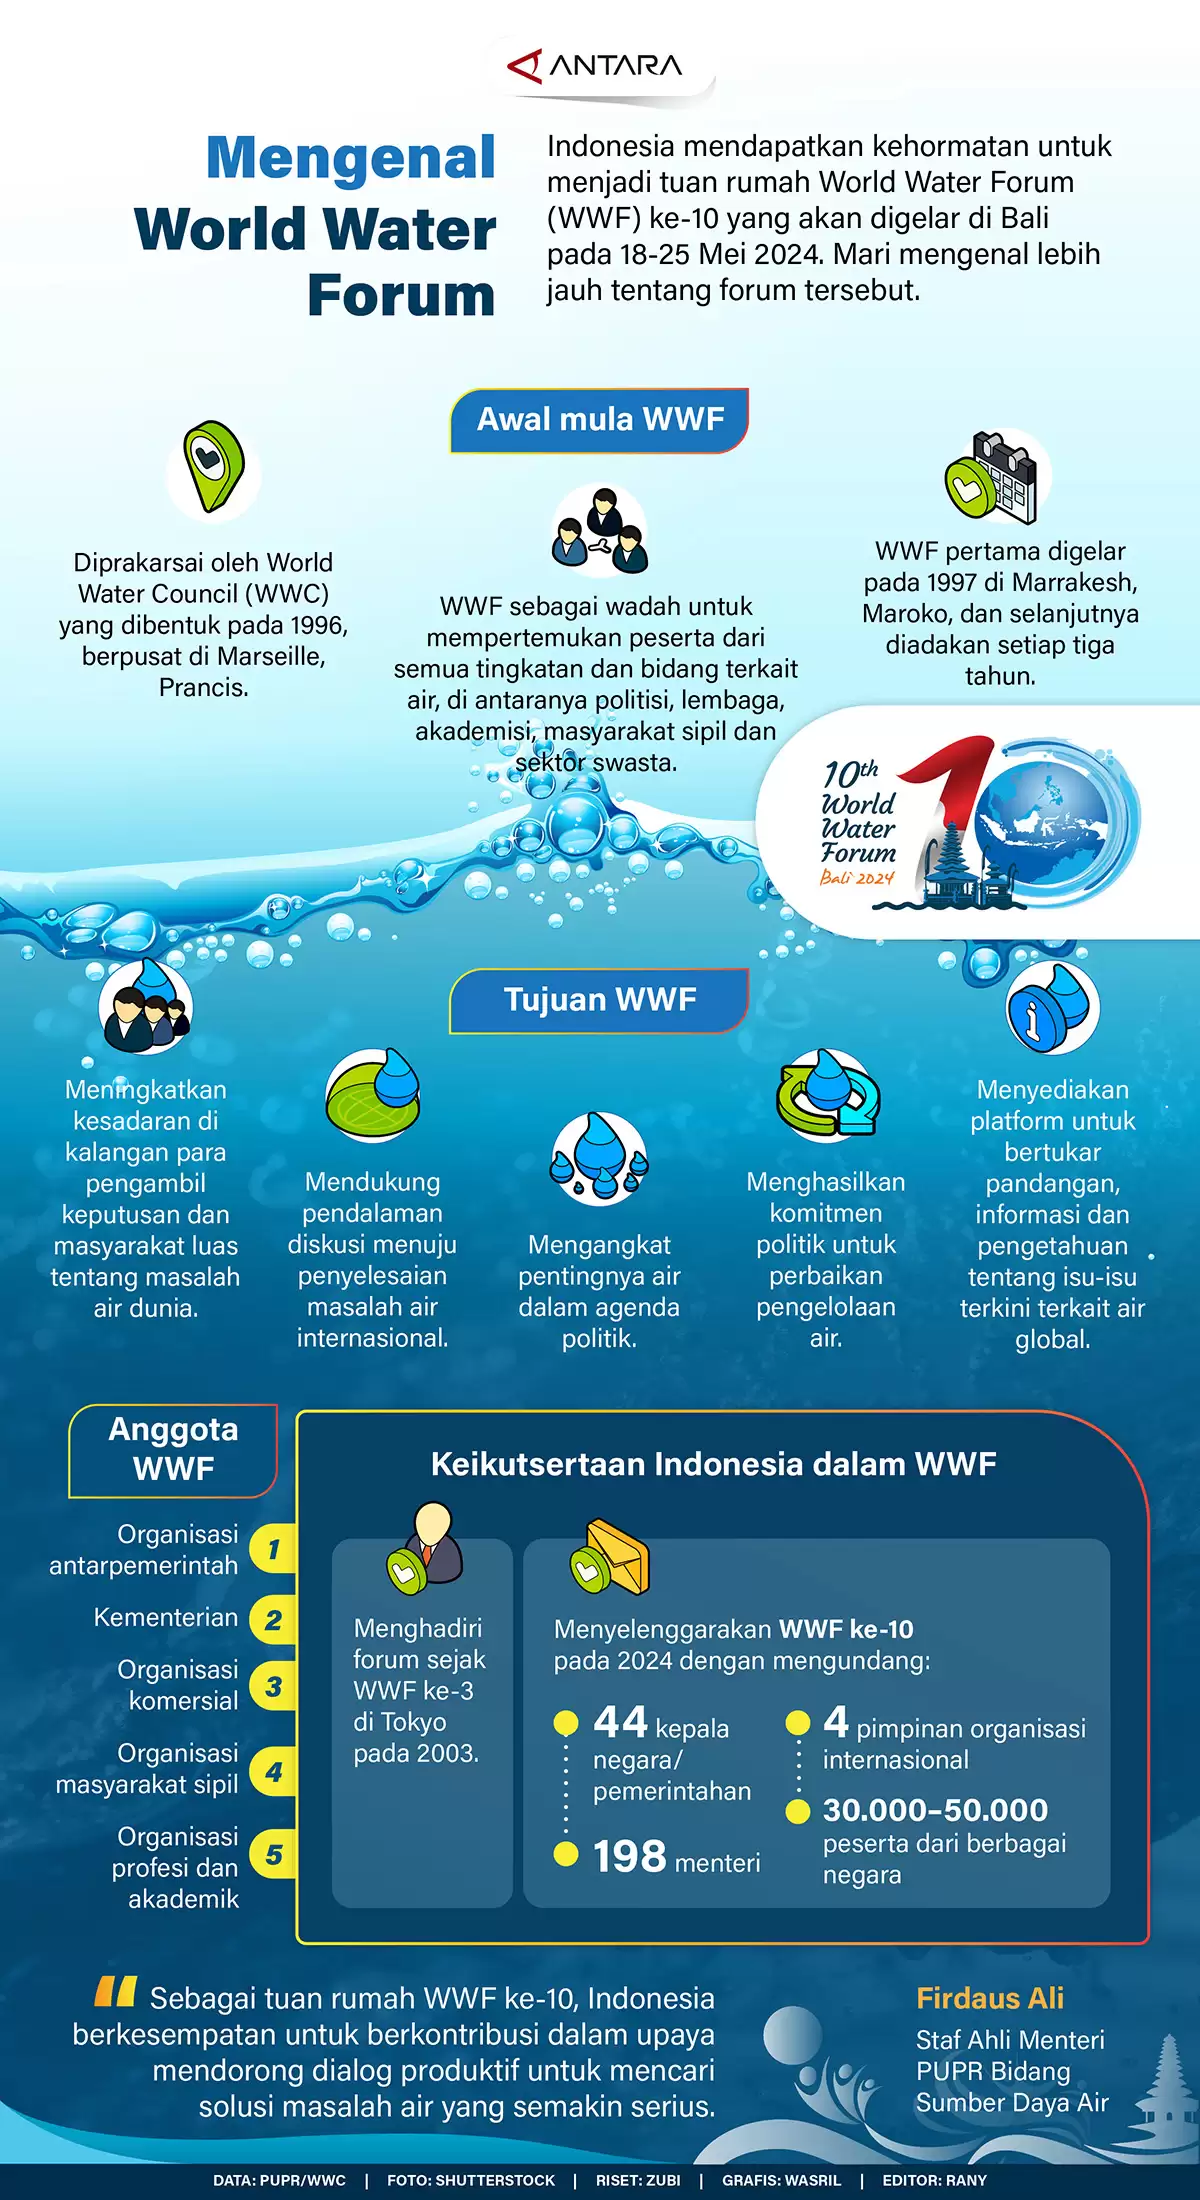 Mengenal World Water Forum